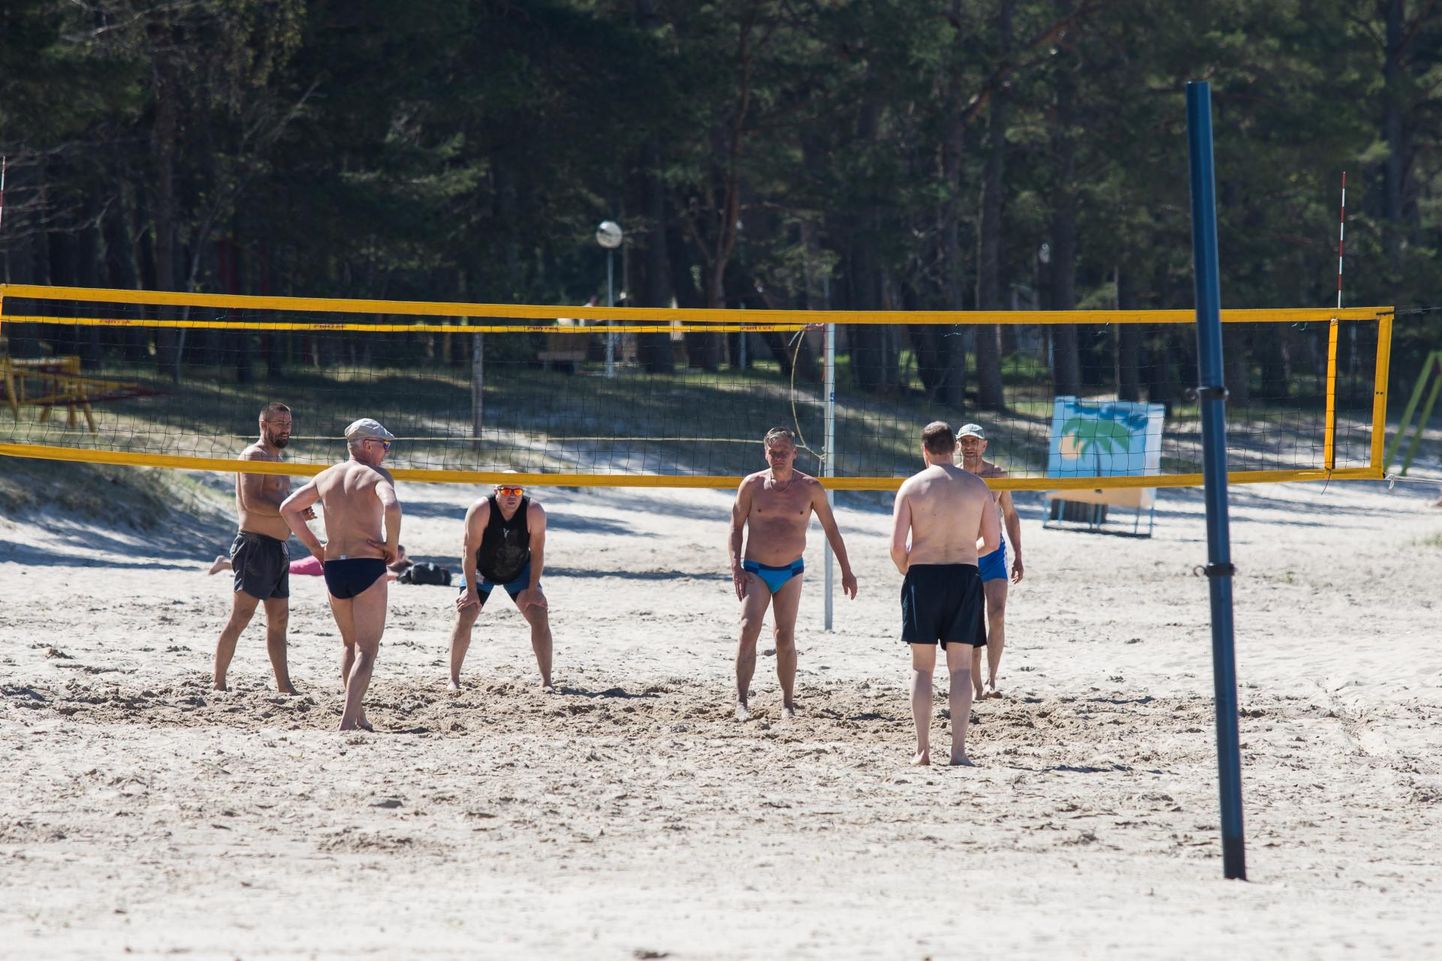 Võsu ranna võrkpalliväljakutel asuvad eeloleval laupäeval võistlustulle meesveteranid.